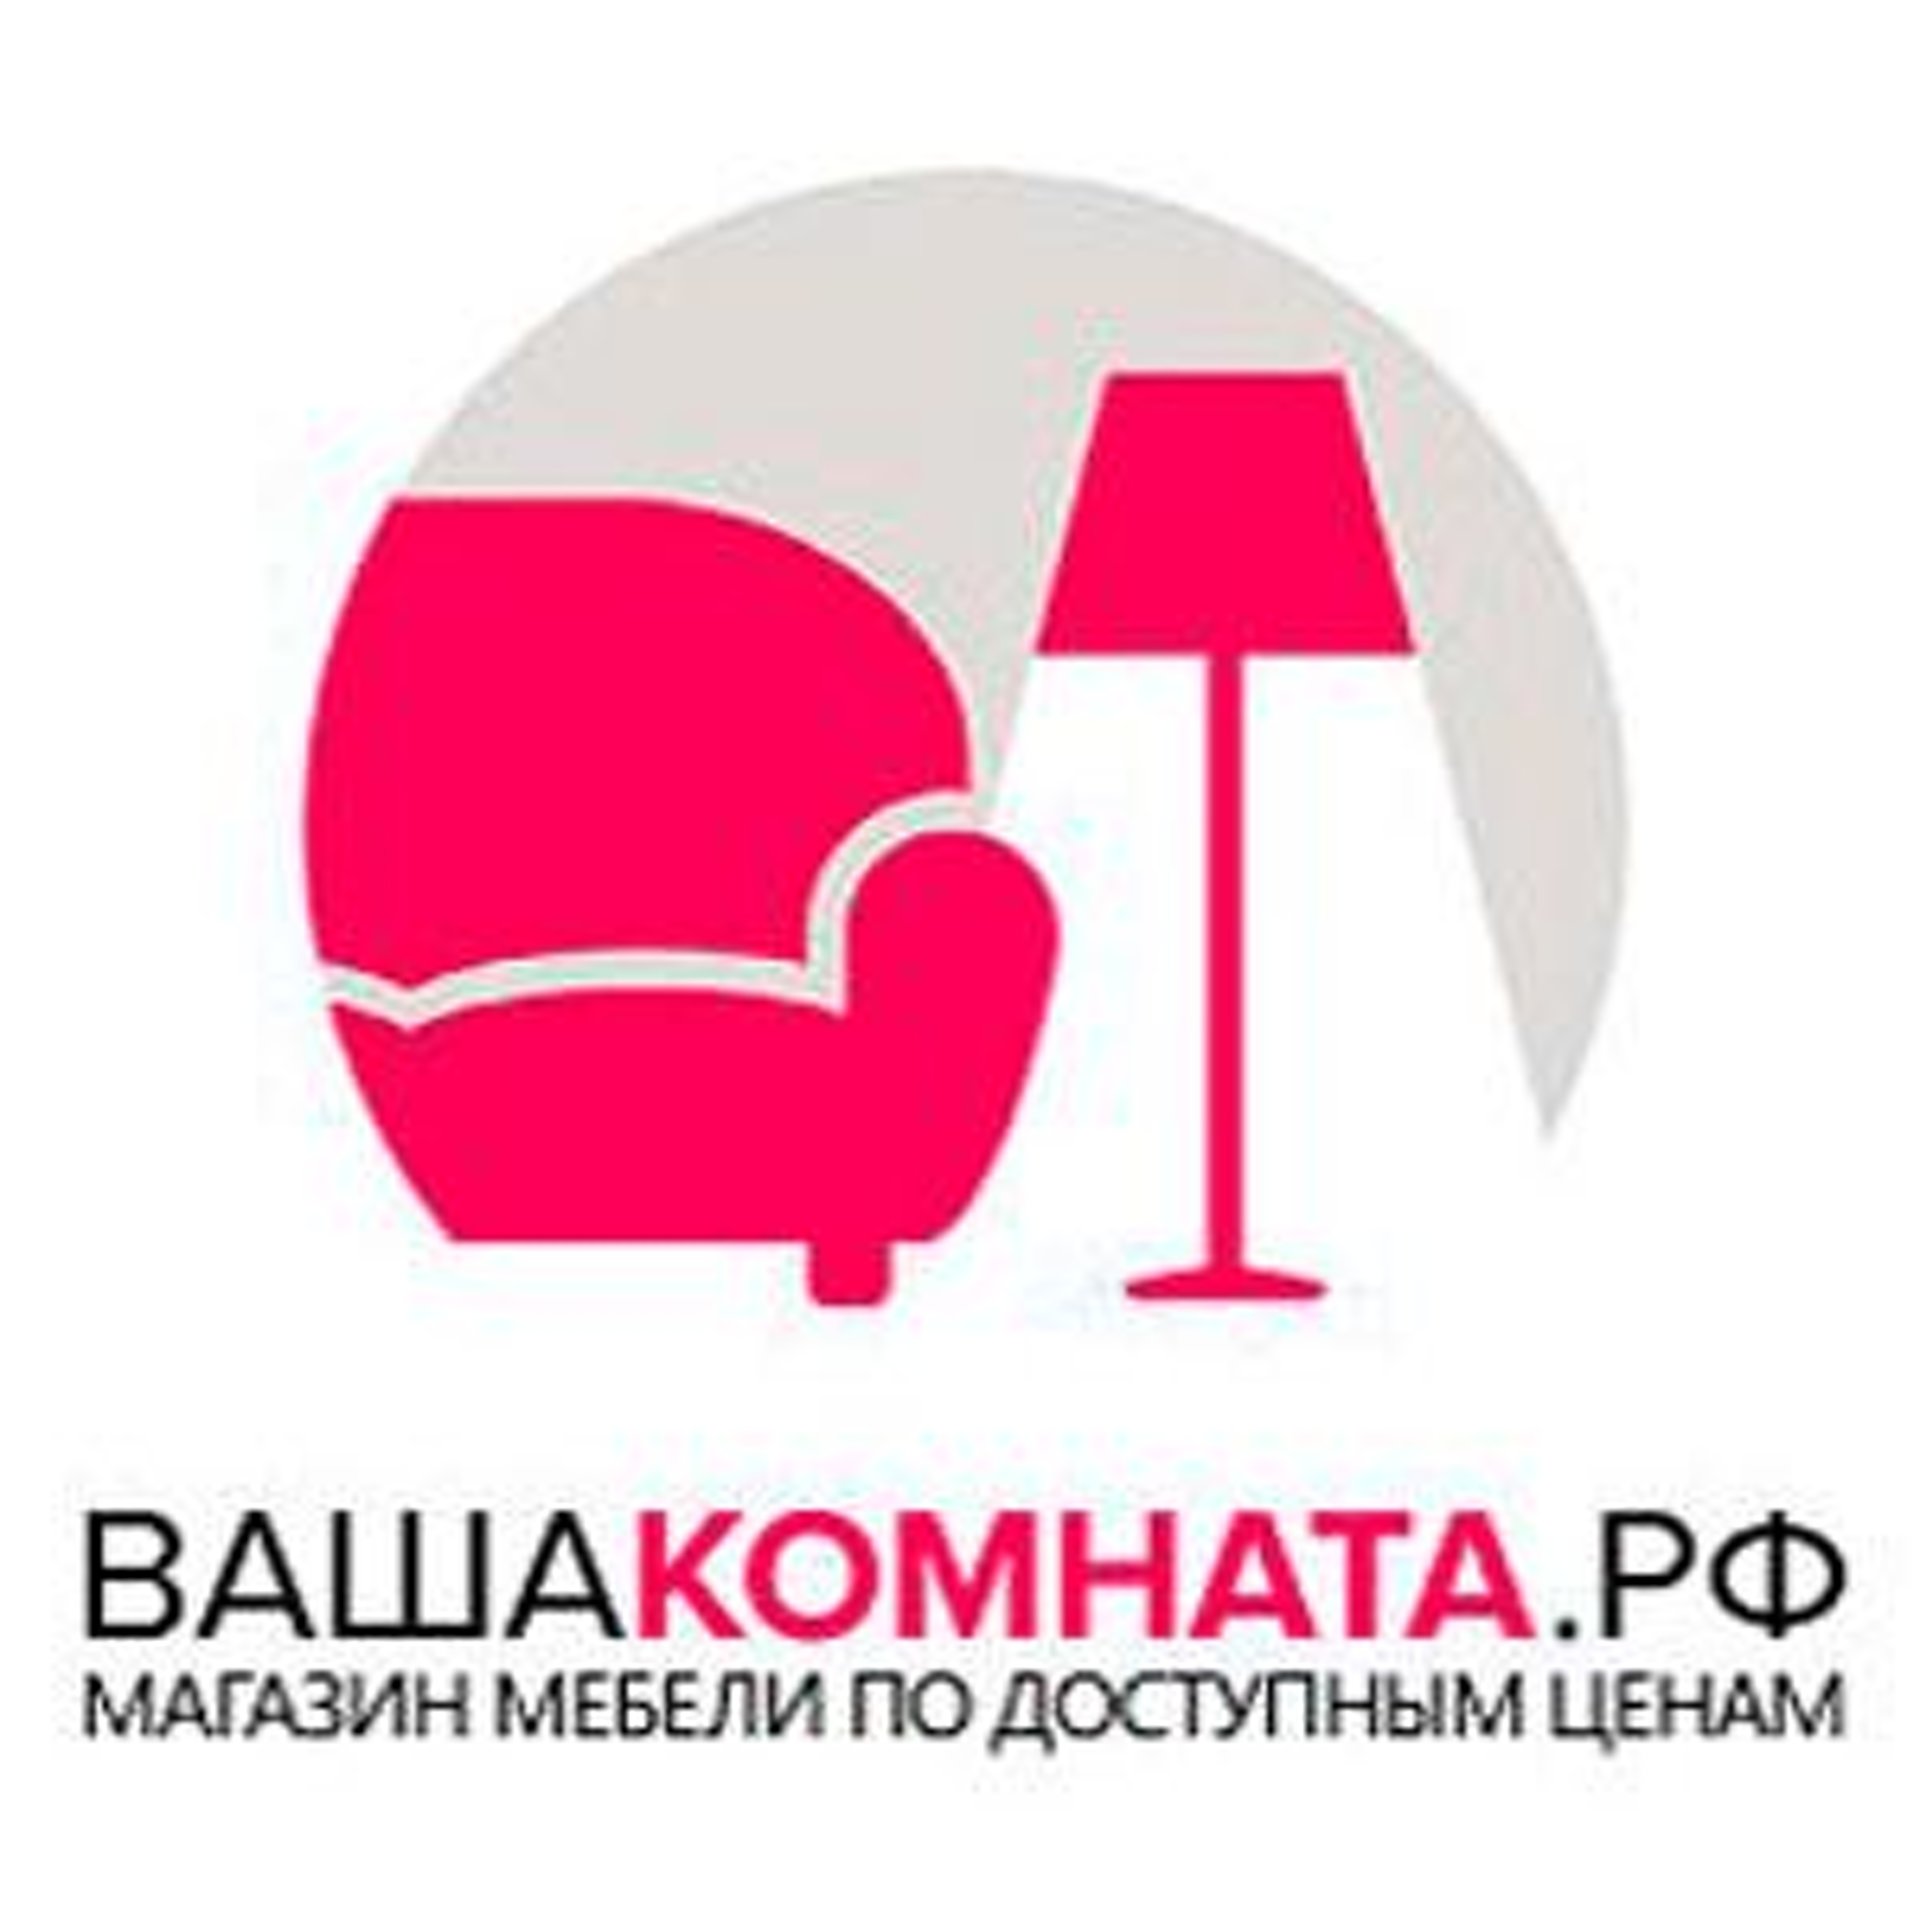 Ваша Комната Воронеж Мебель Интернет Магазин